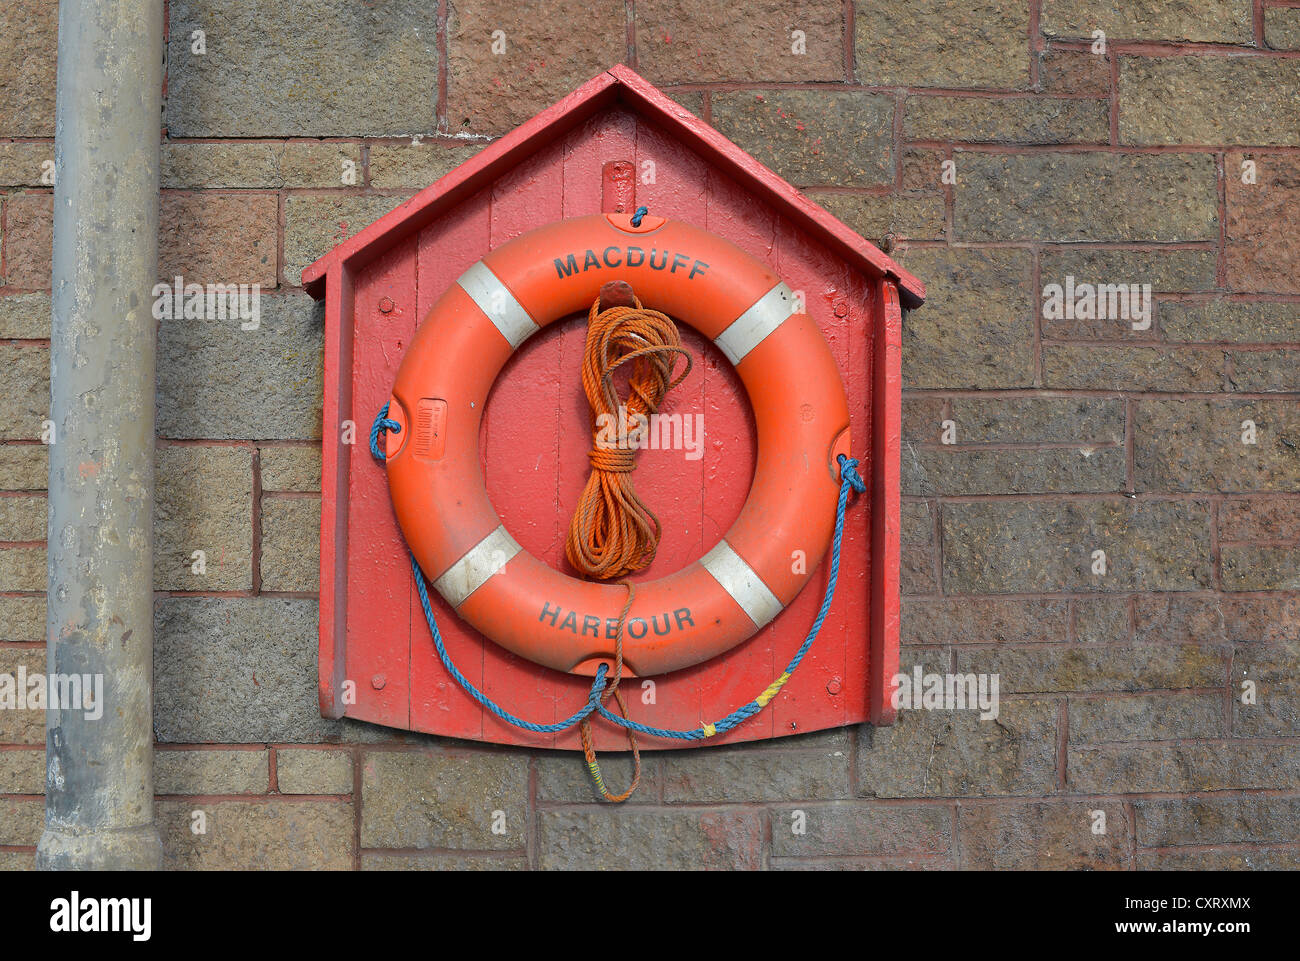 Roten Rettungsring Rettungsring im Hafen von Macduff, Banffshire, Schottland, Vereinigtes Königreich, Europa Stockfoto